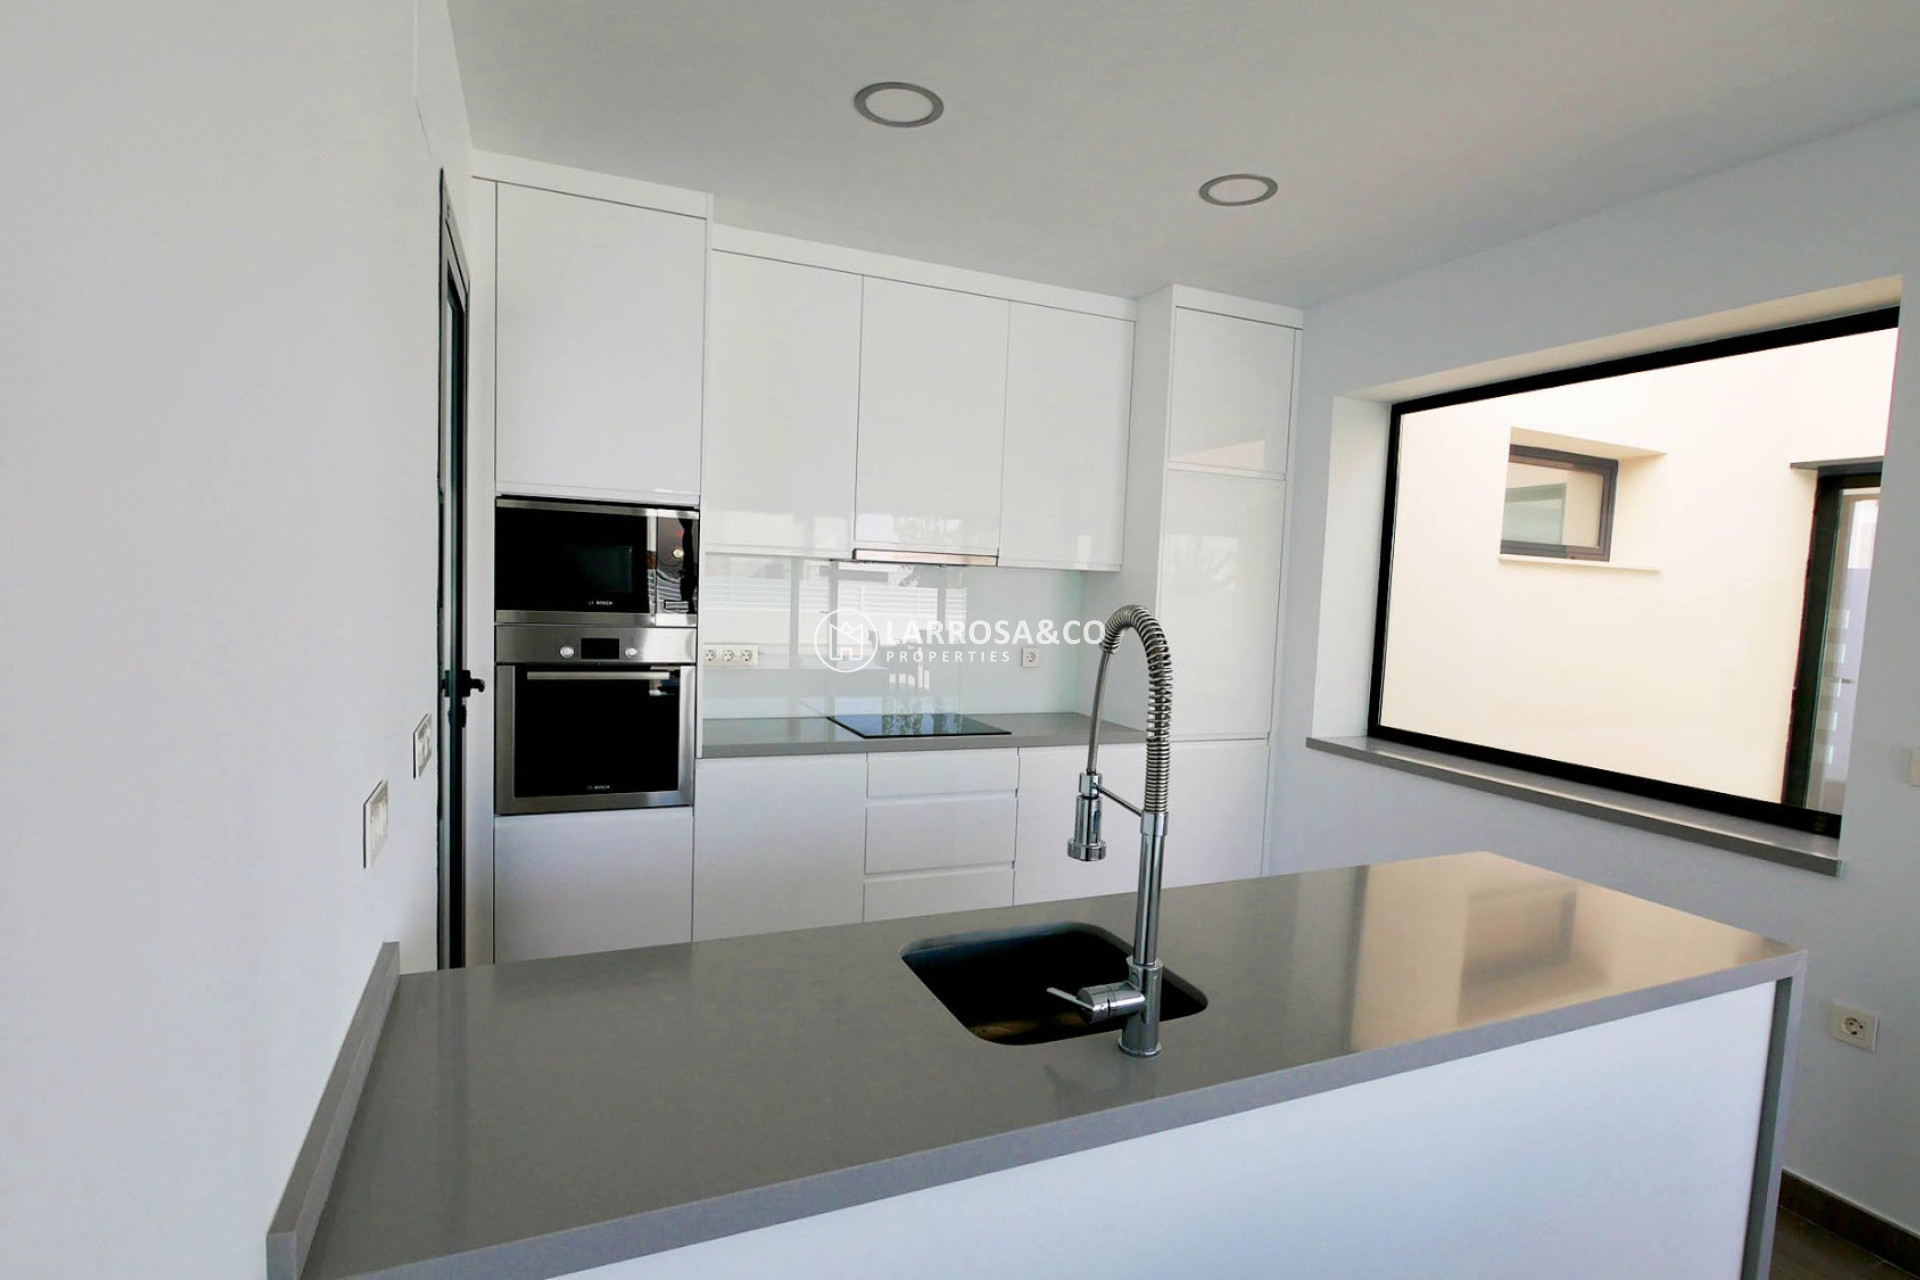 new-built-villa-la-marina-kitchen-on2089